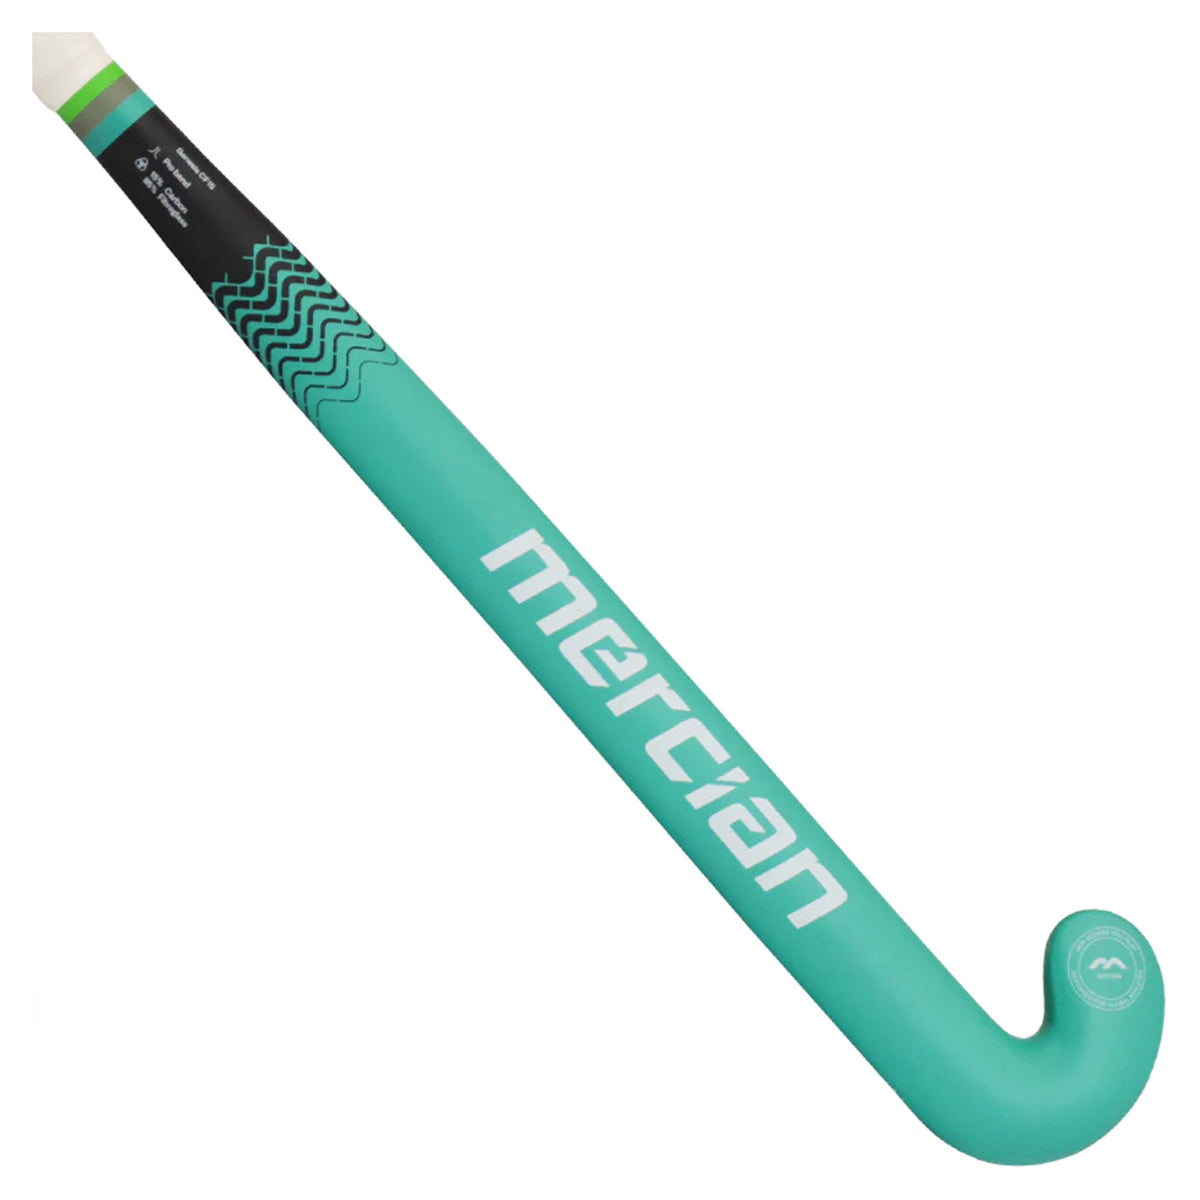 Mercian Genesis CF25 Indoor Hockey Stick: Black/Green